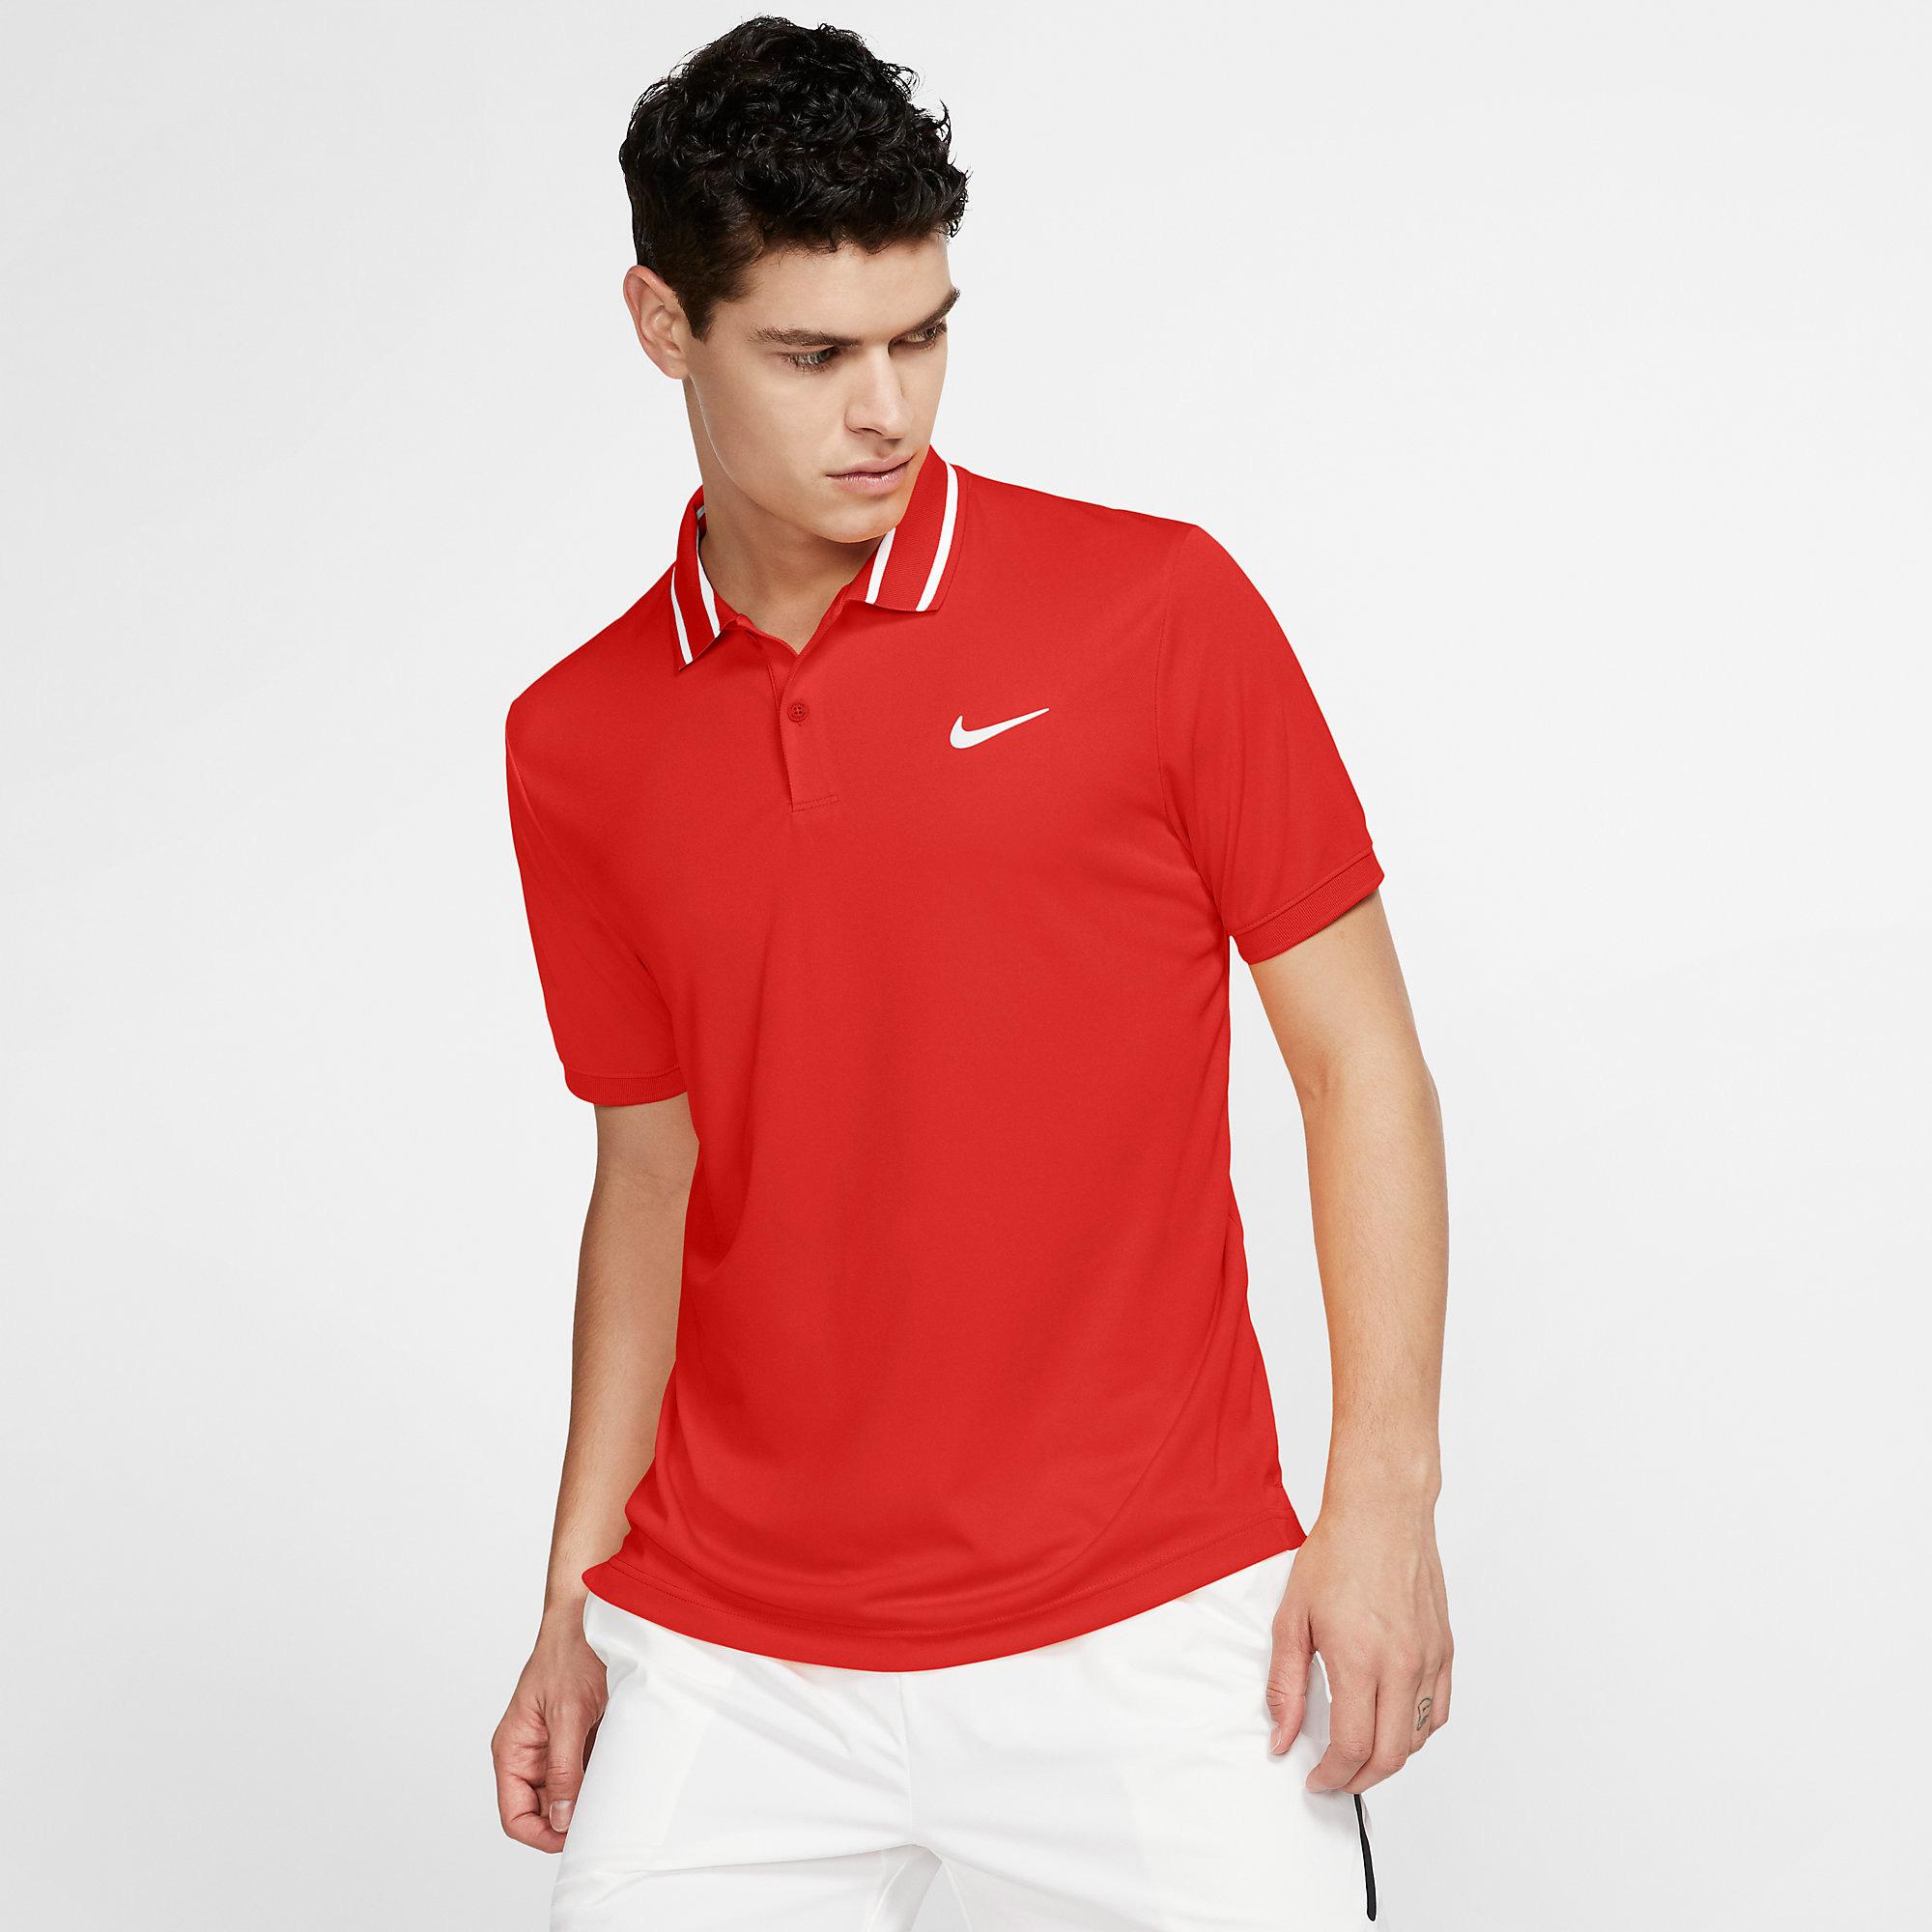 Nike Mens Dri-FIT Tennis Polo - Red/White - Tennisnuts.com